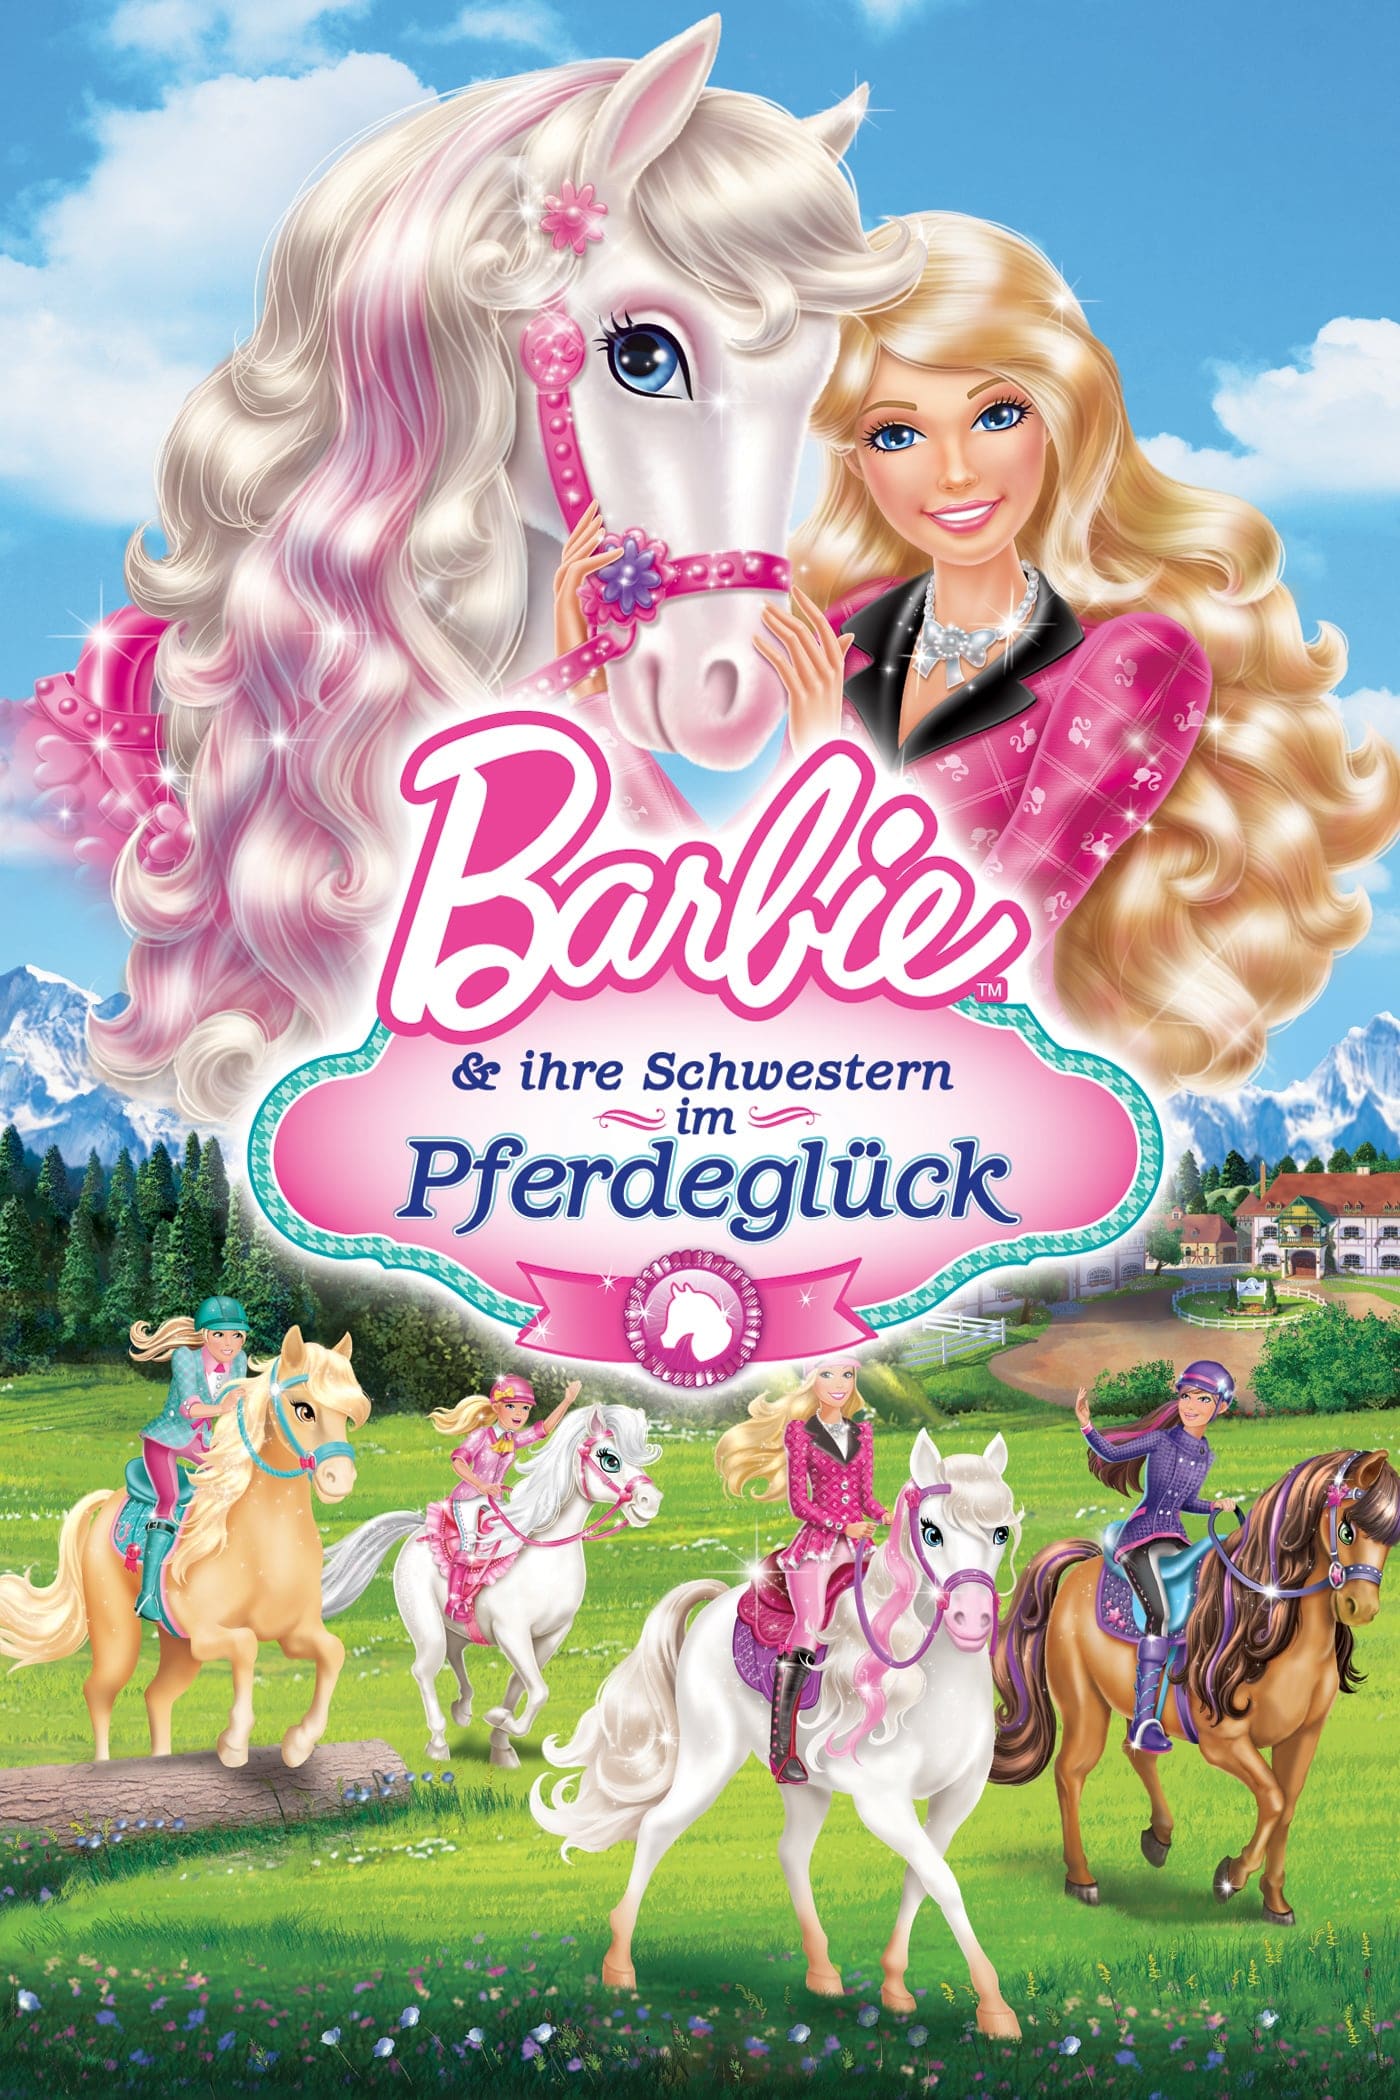 Plakat von "Barbie & ihre Schwestern im Pferdeglück"